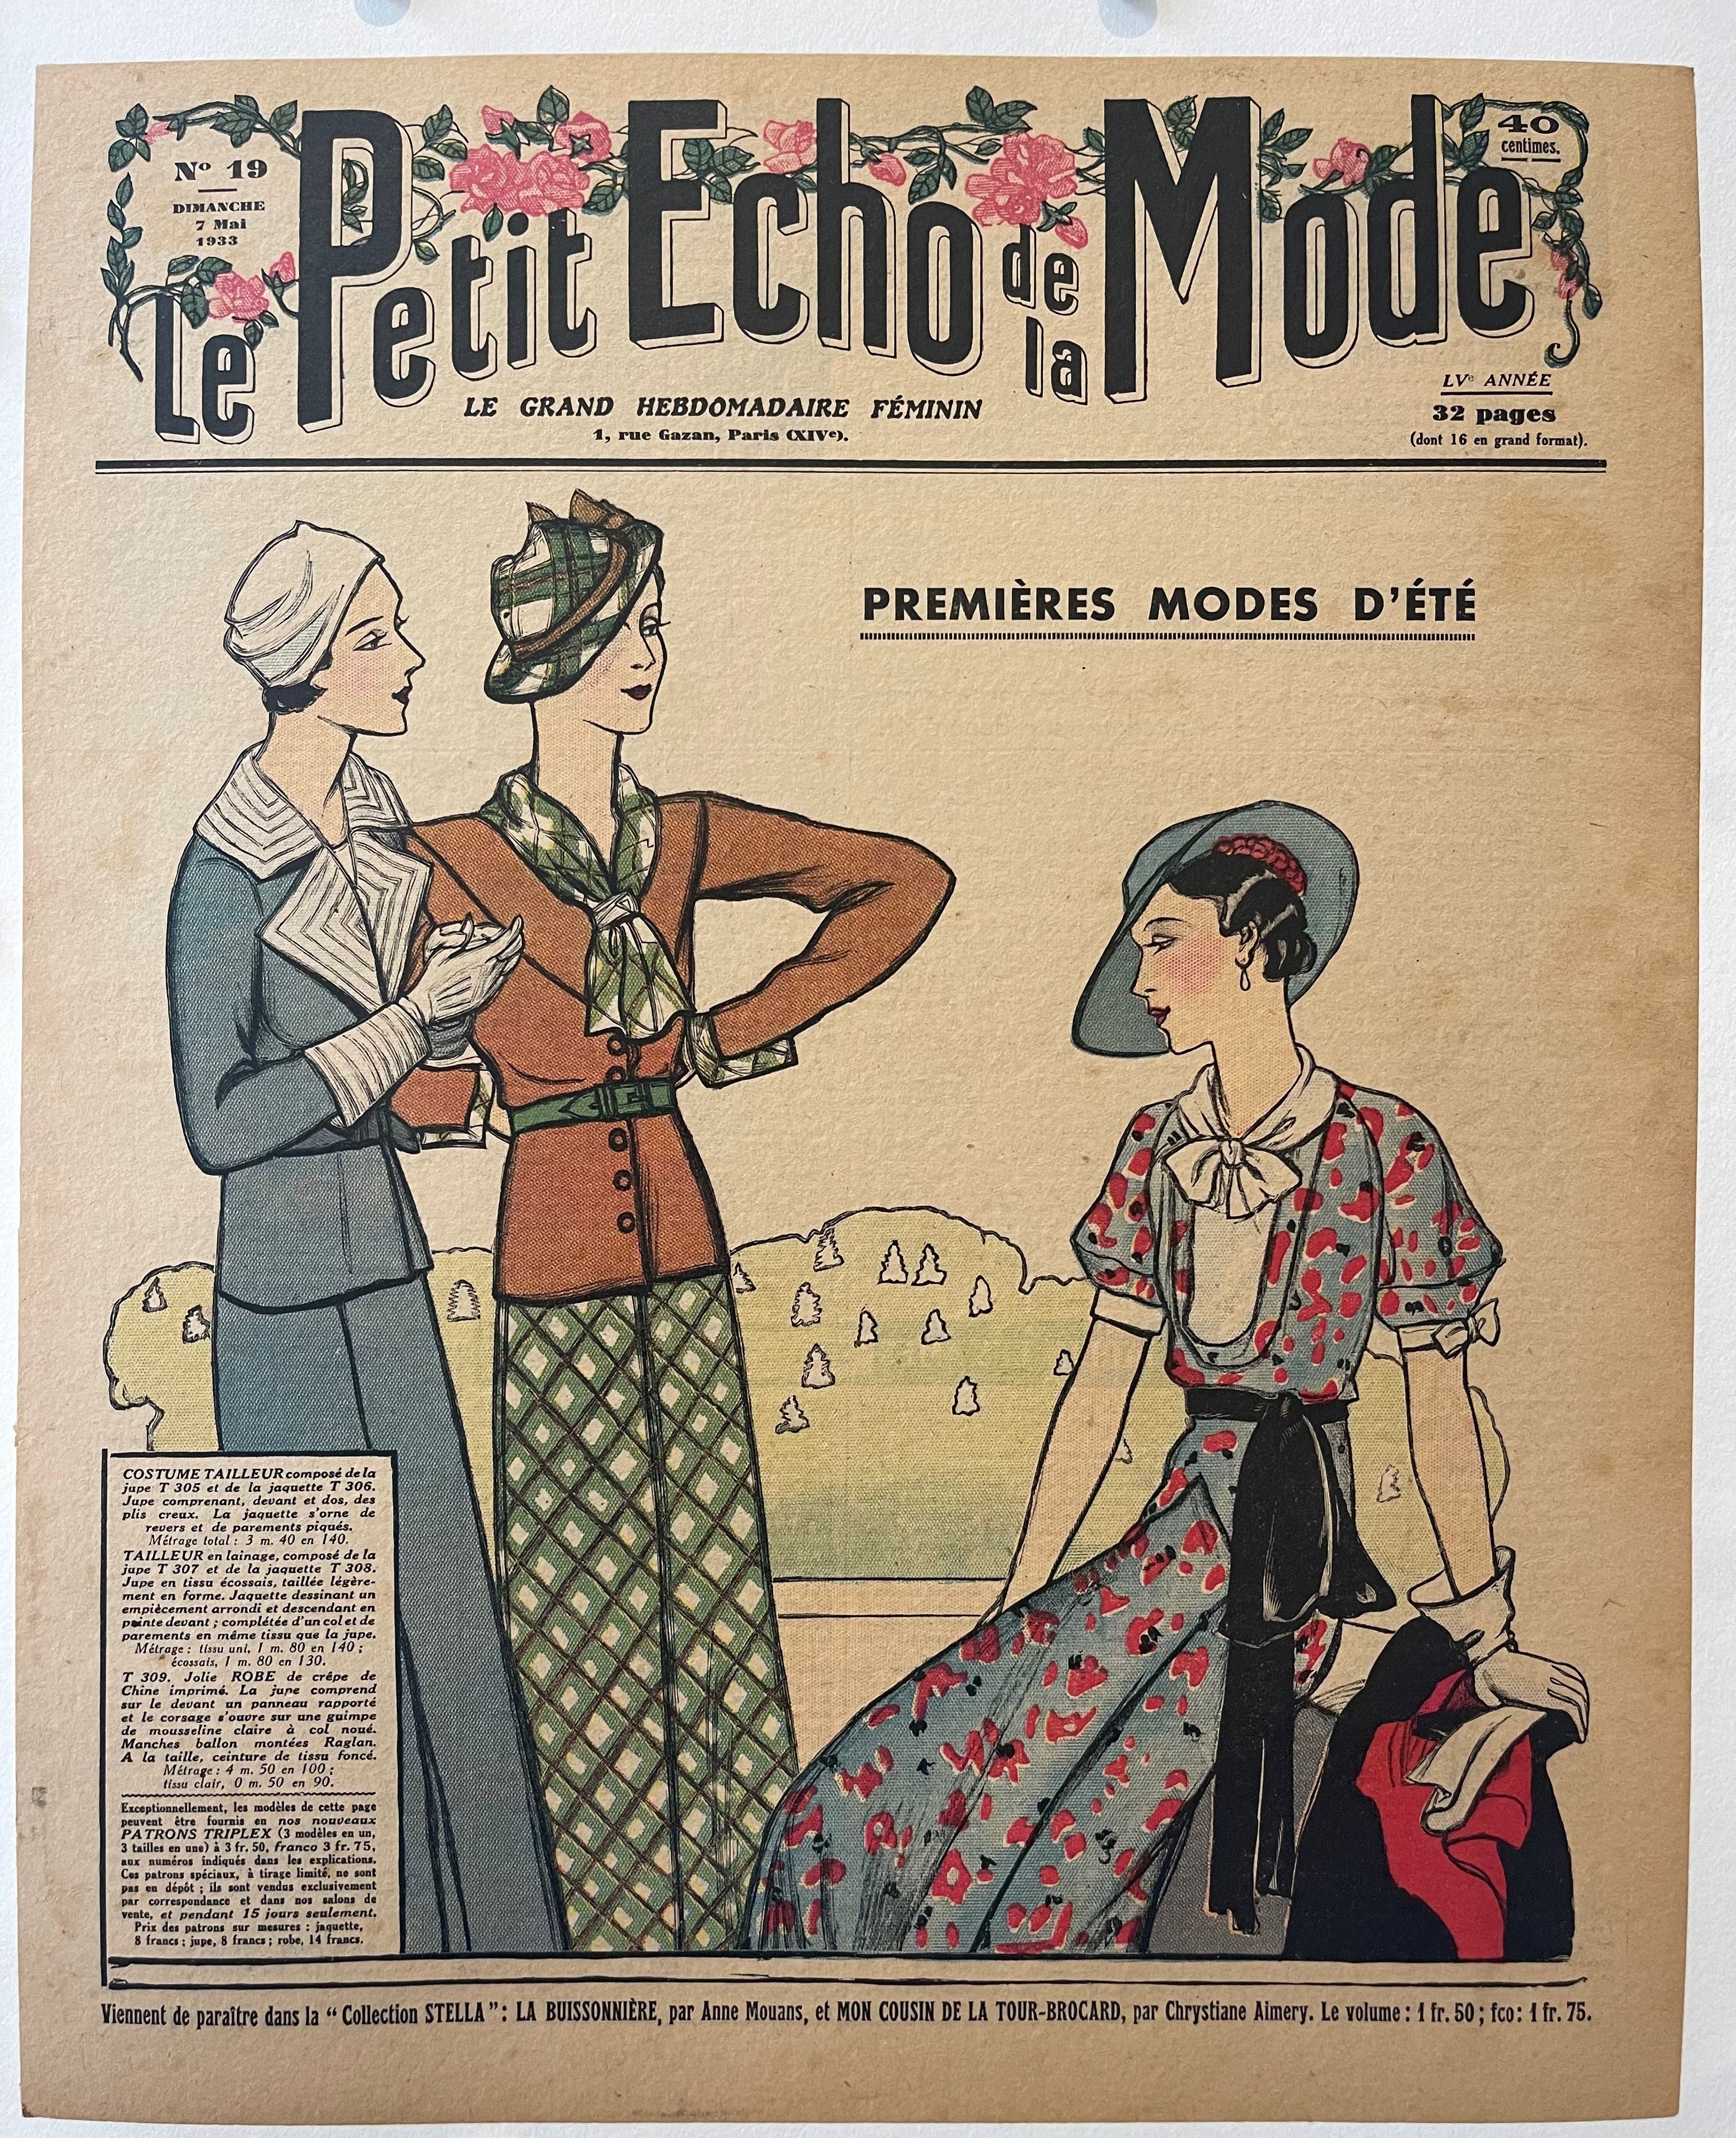 Le Petit Echo de la Mode Print – Poster Museum